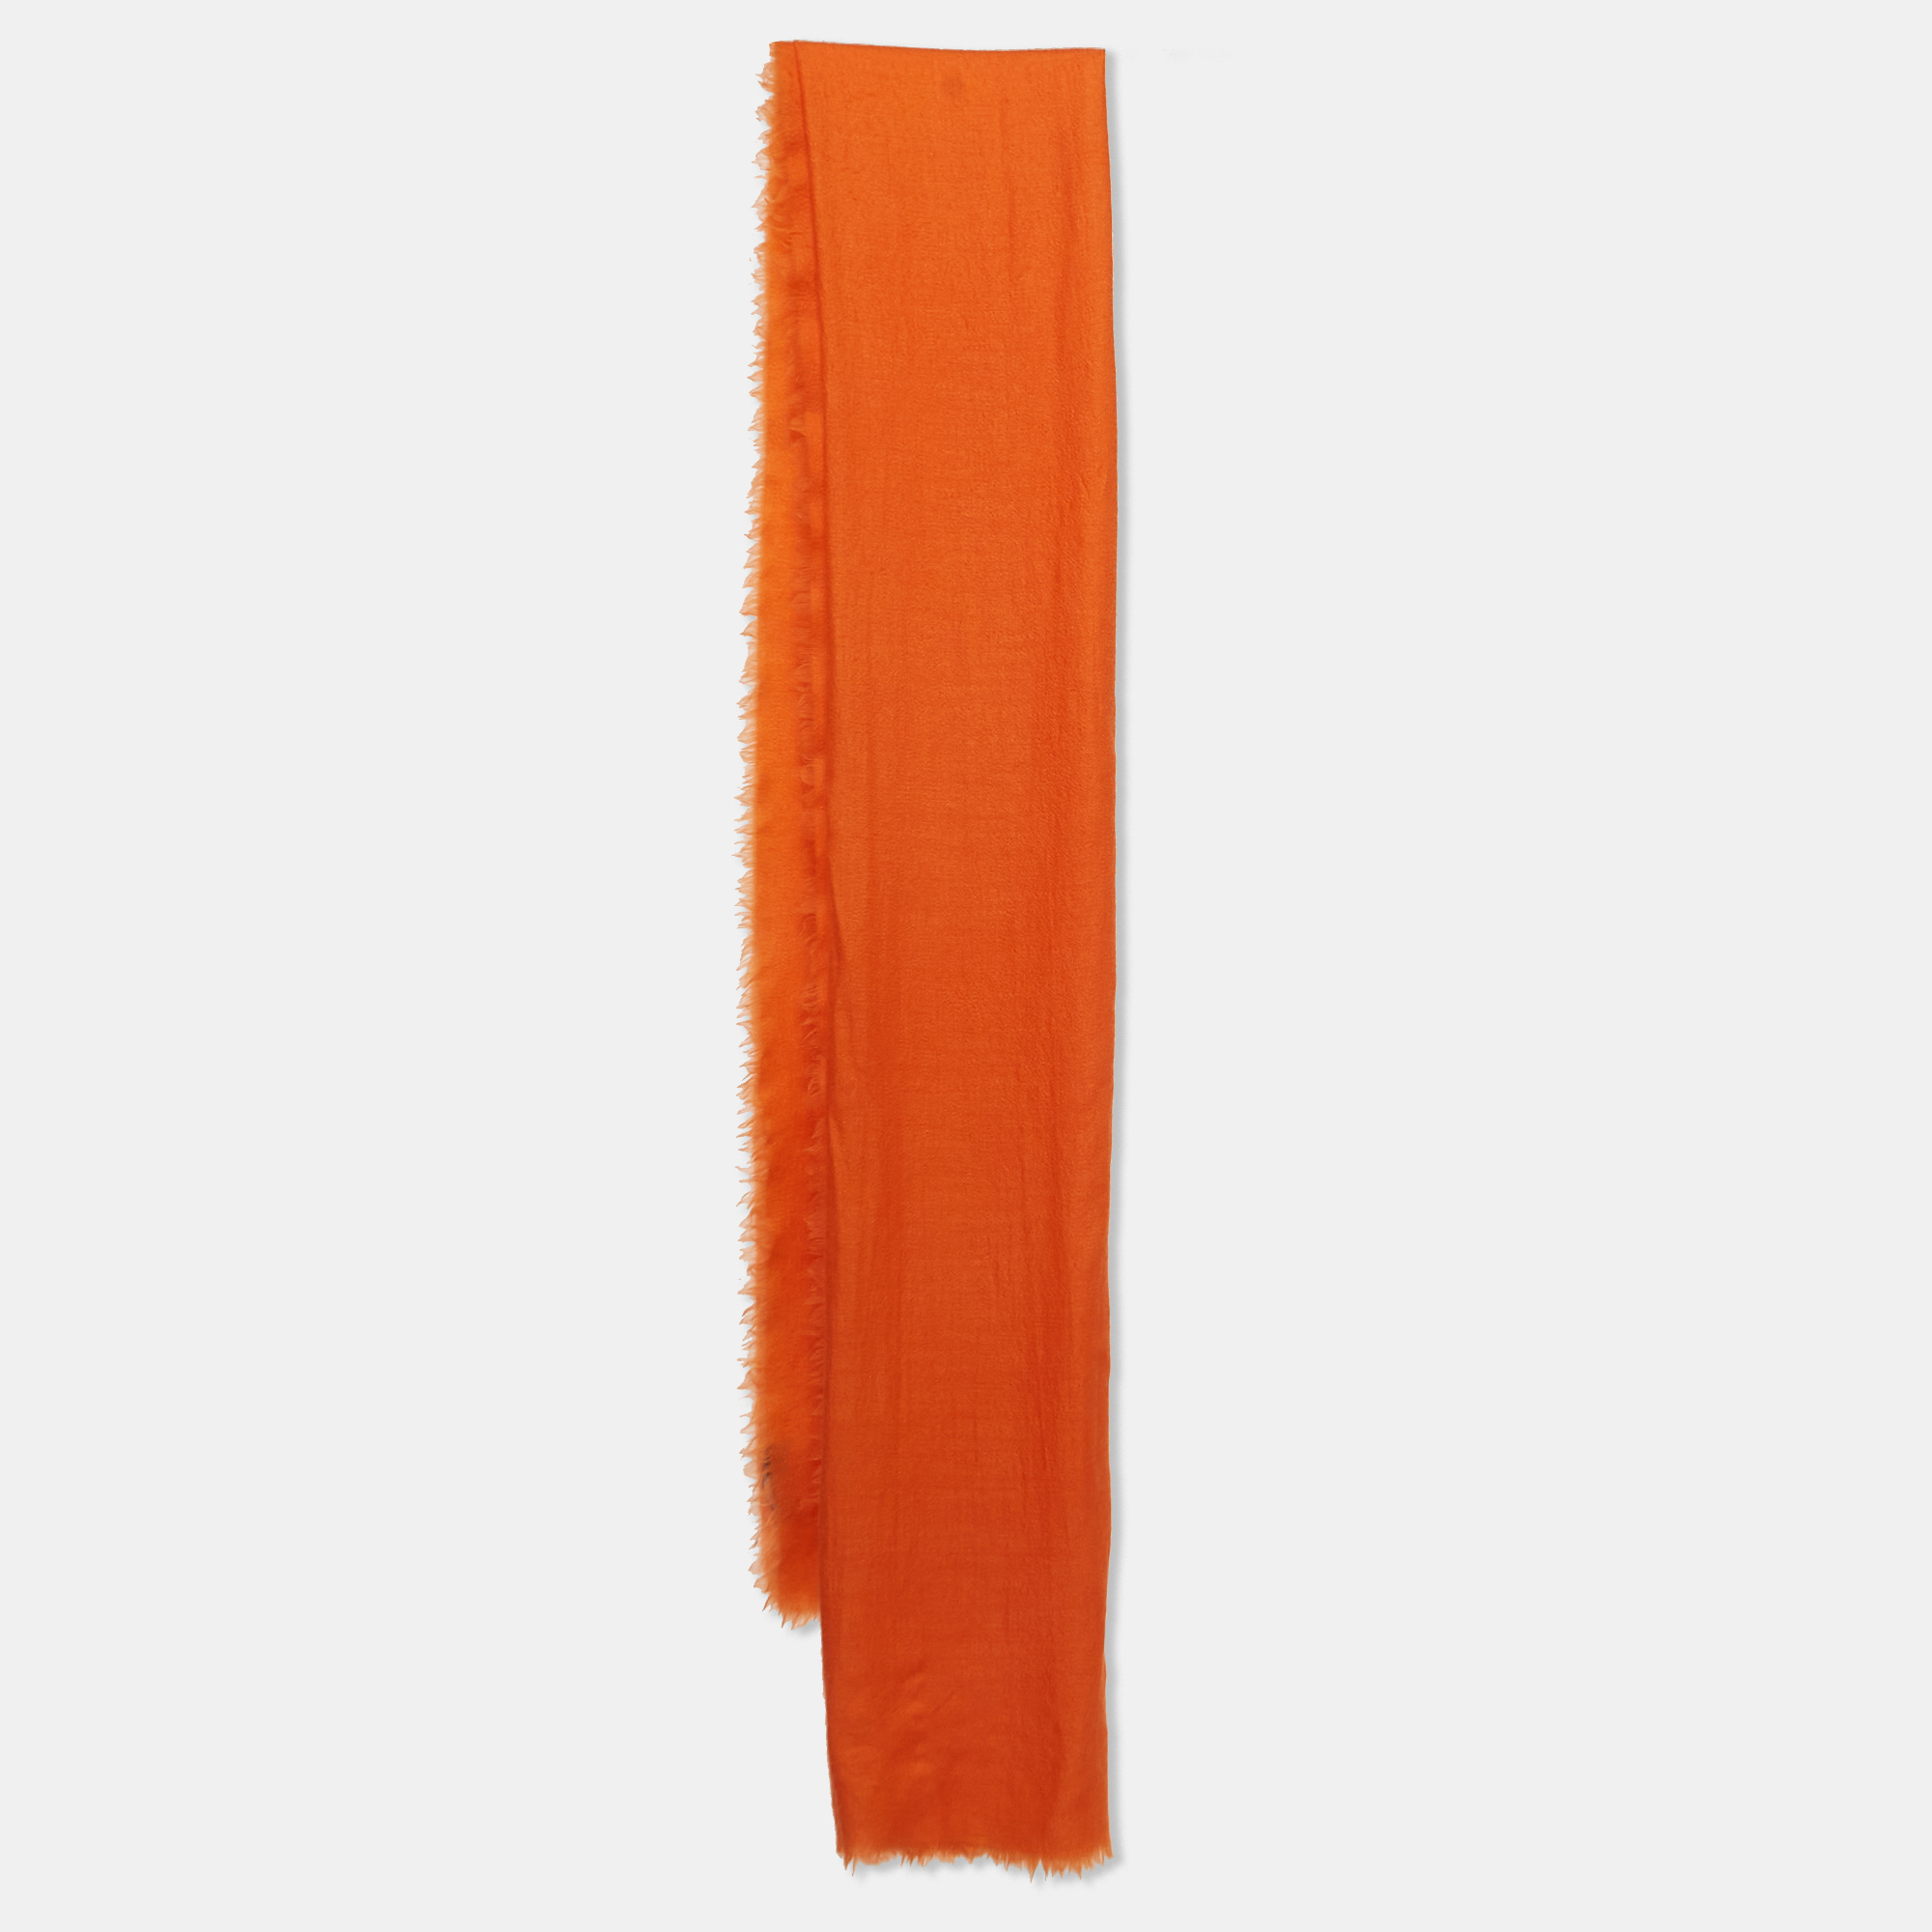 Yves saint laurent orange cashmere fringed scarf